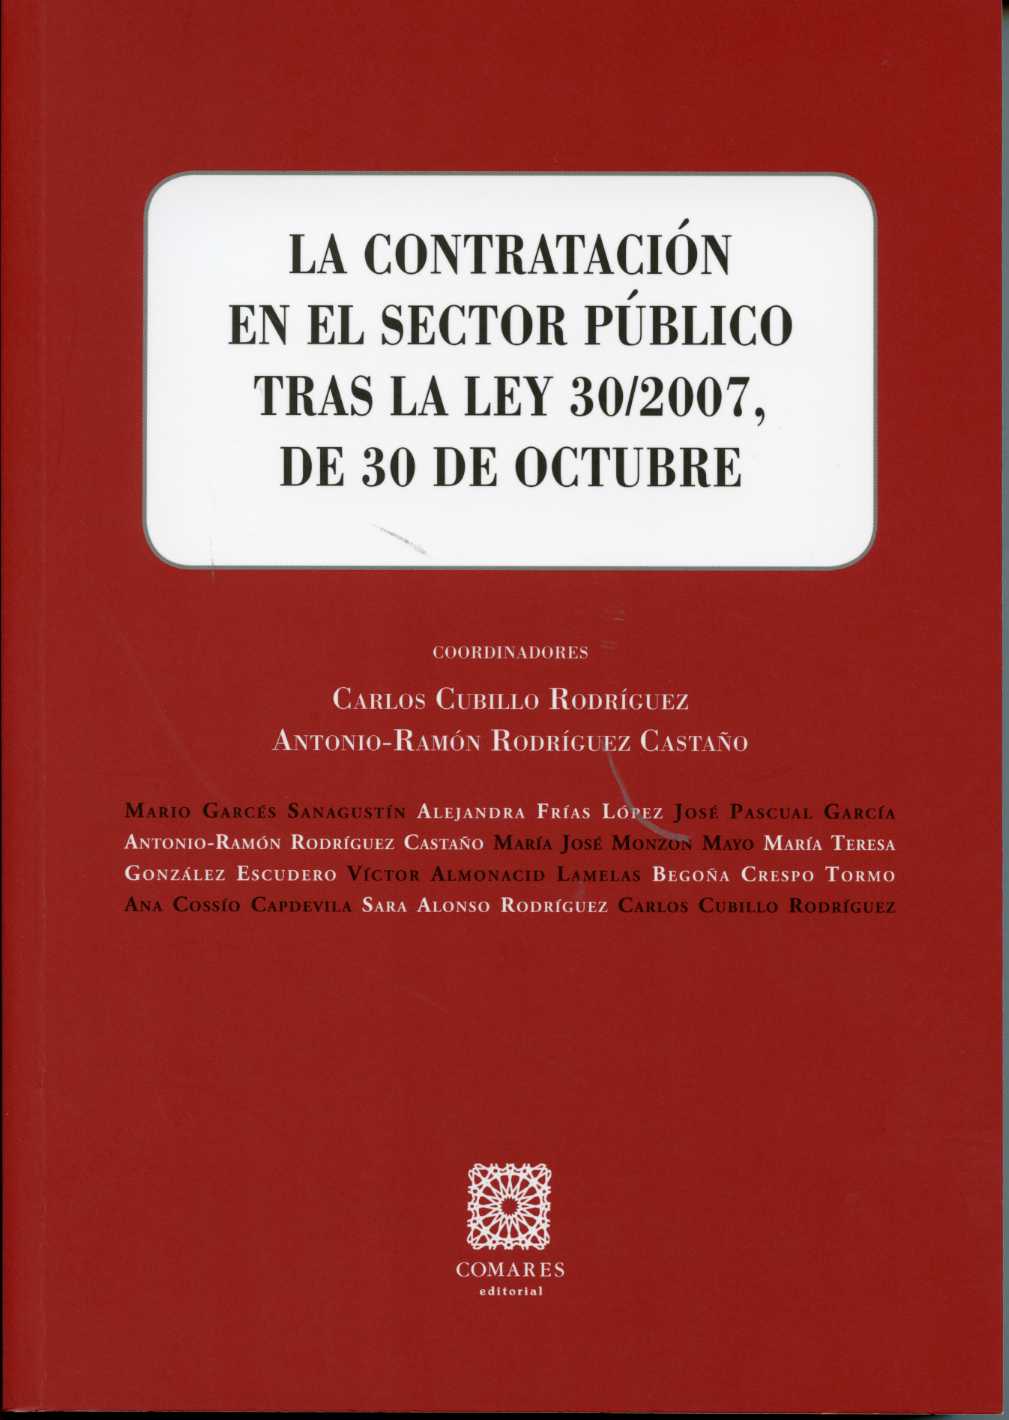 Contratación en el Sector Público Tras la Ley 30/2007, de 30 de Octubre, La.-0